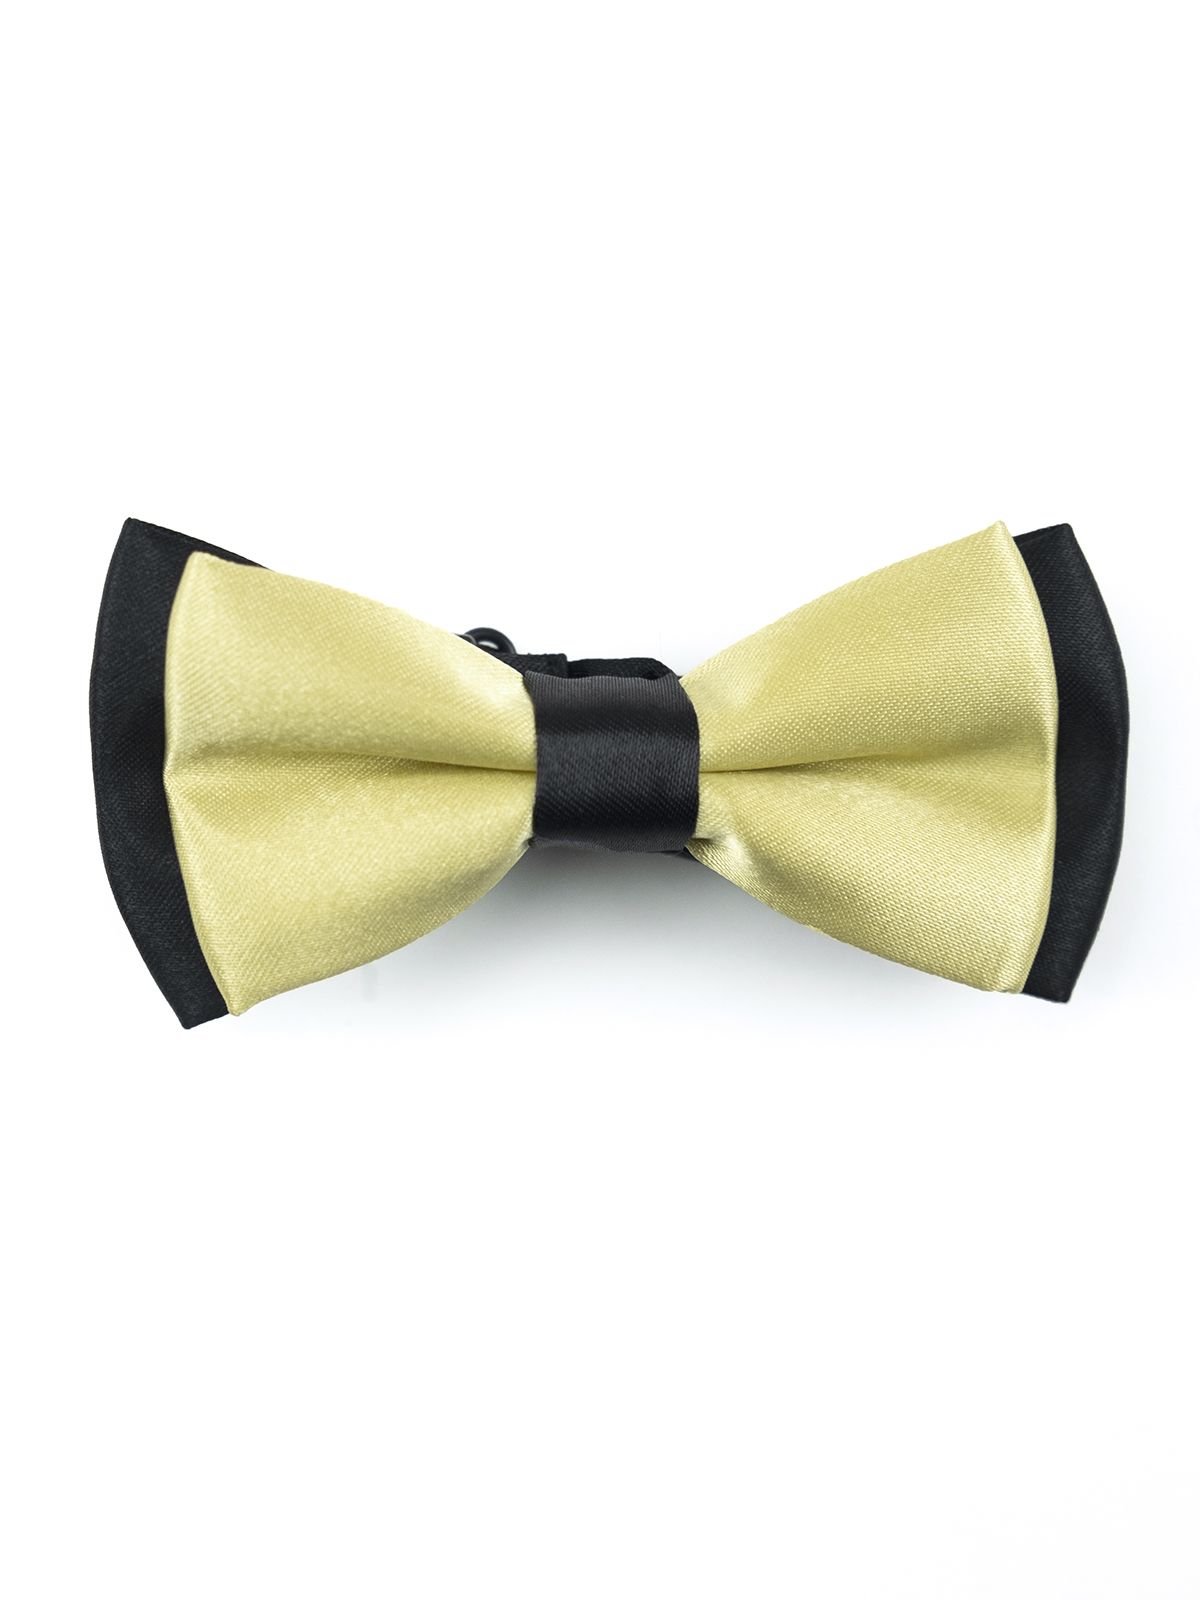 Детская галстук-бабочка атласная бледно-желтая в черном описание: Состав - , Размер - 10 см х 5 см, Цвет - Бледно-желтый, Страна производства - Турция;